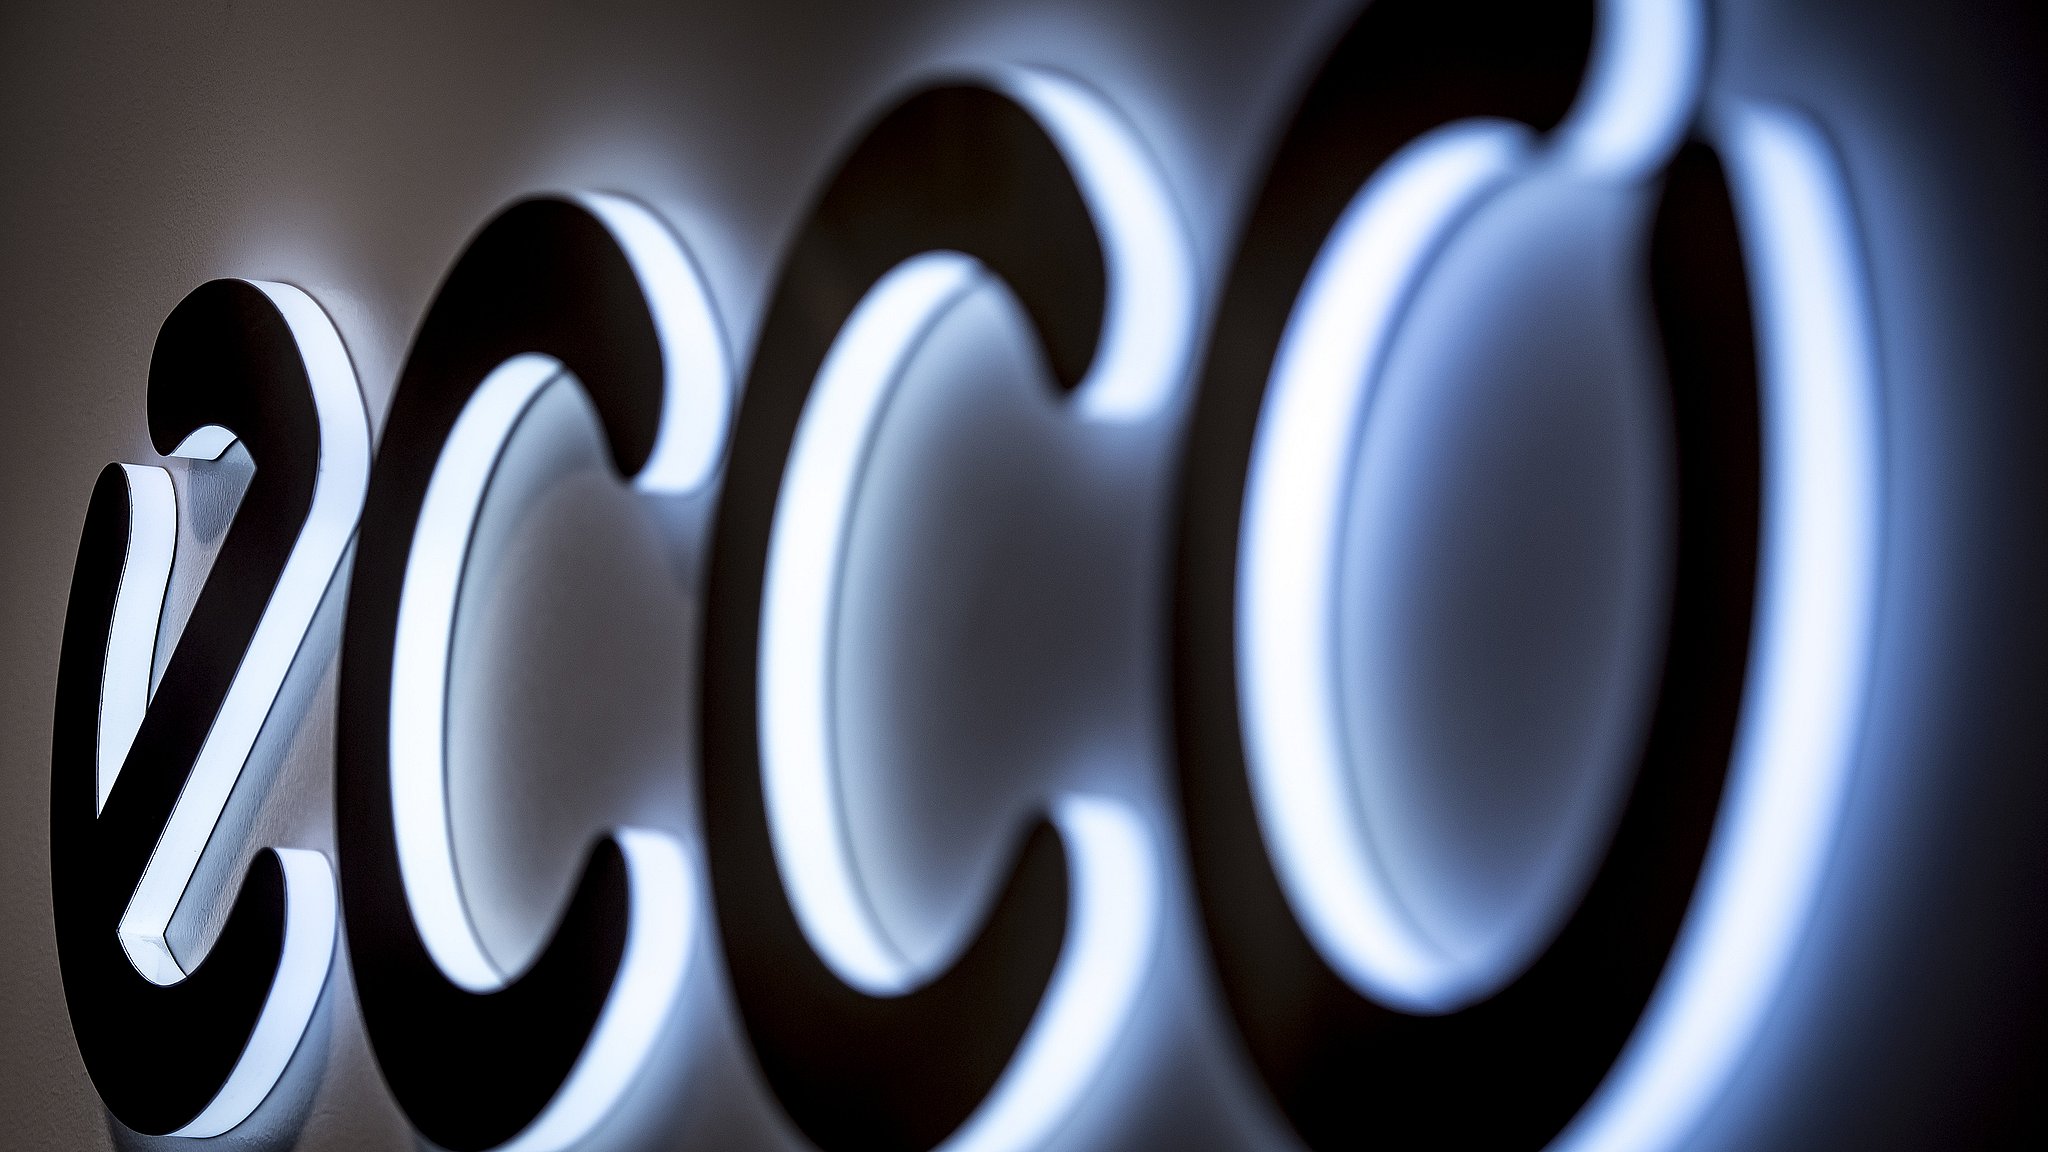 Stor stopper al salg af Ecco-produkter | TV